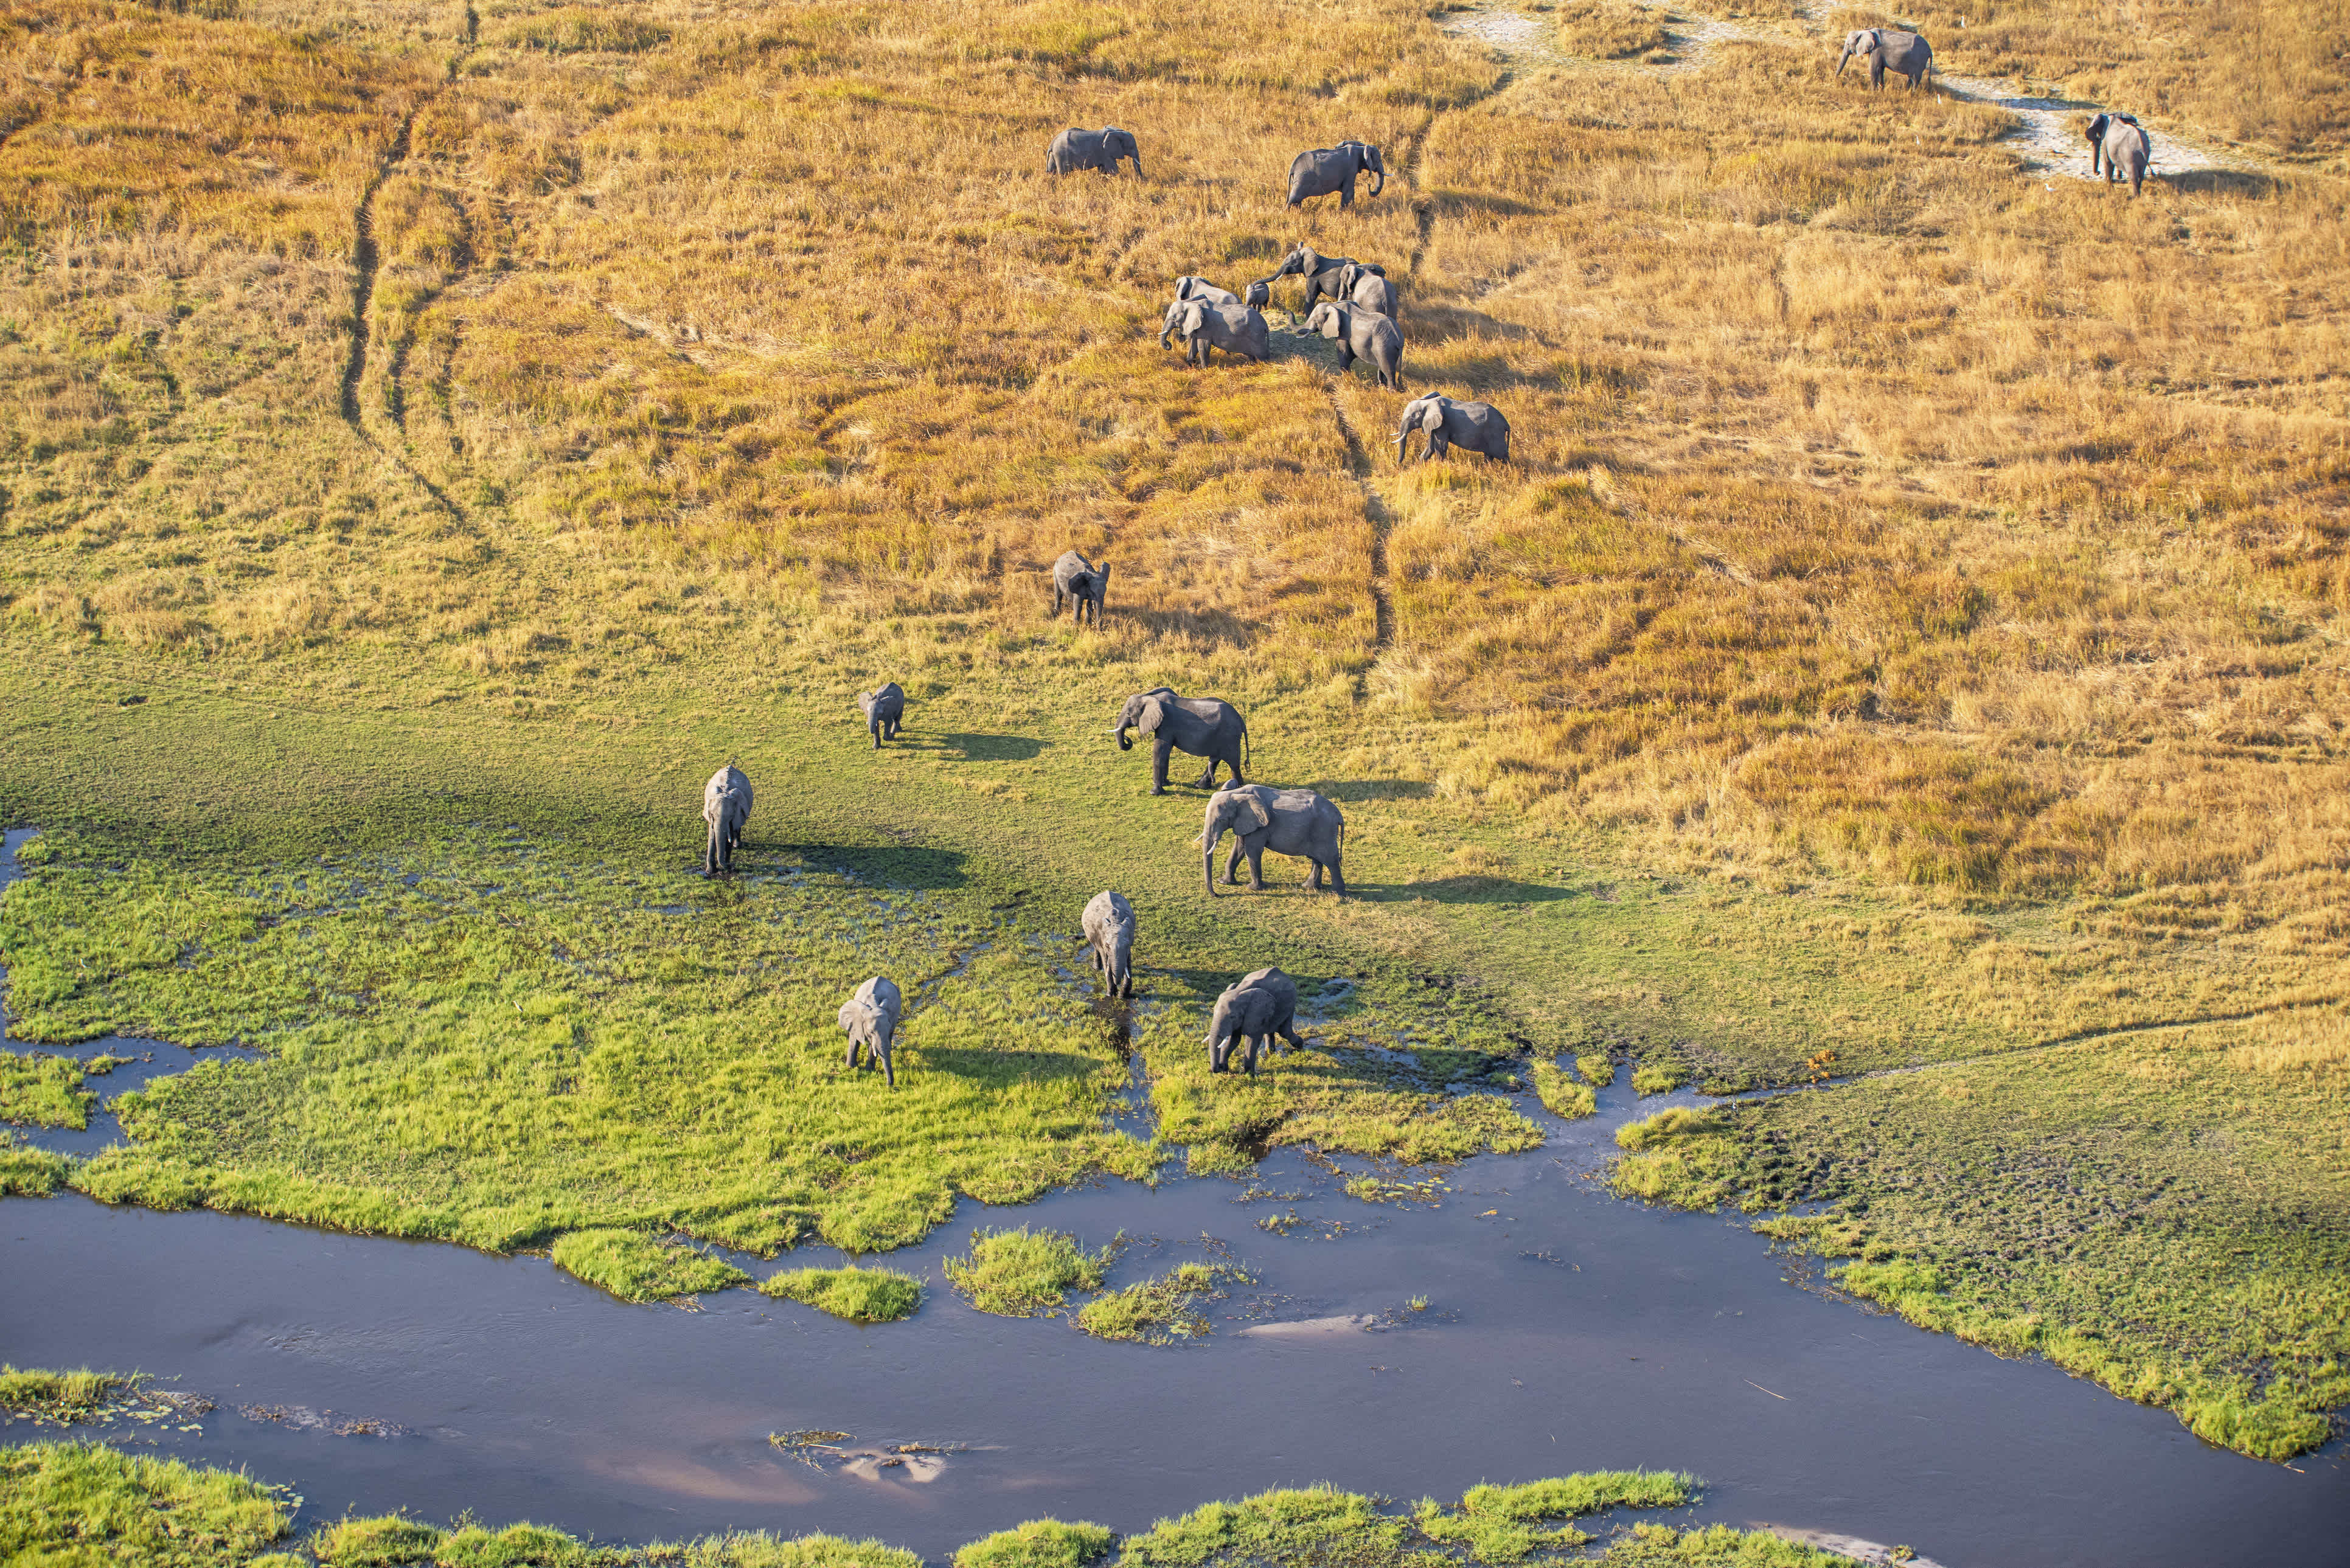 Vue aérienne d'éléphants, delta de l'Okavango, Botswana, Afrique